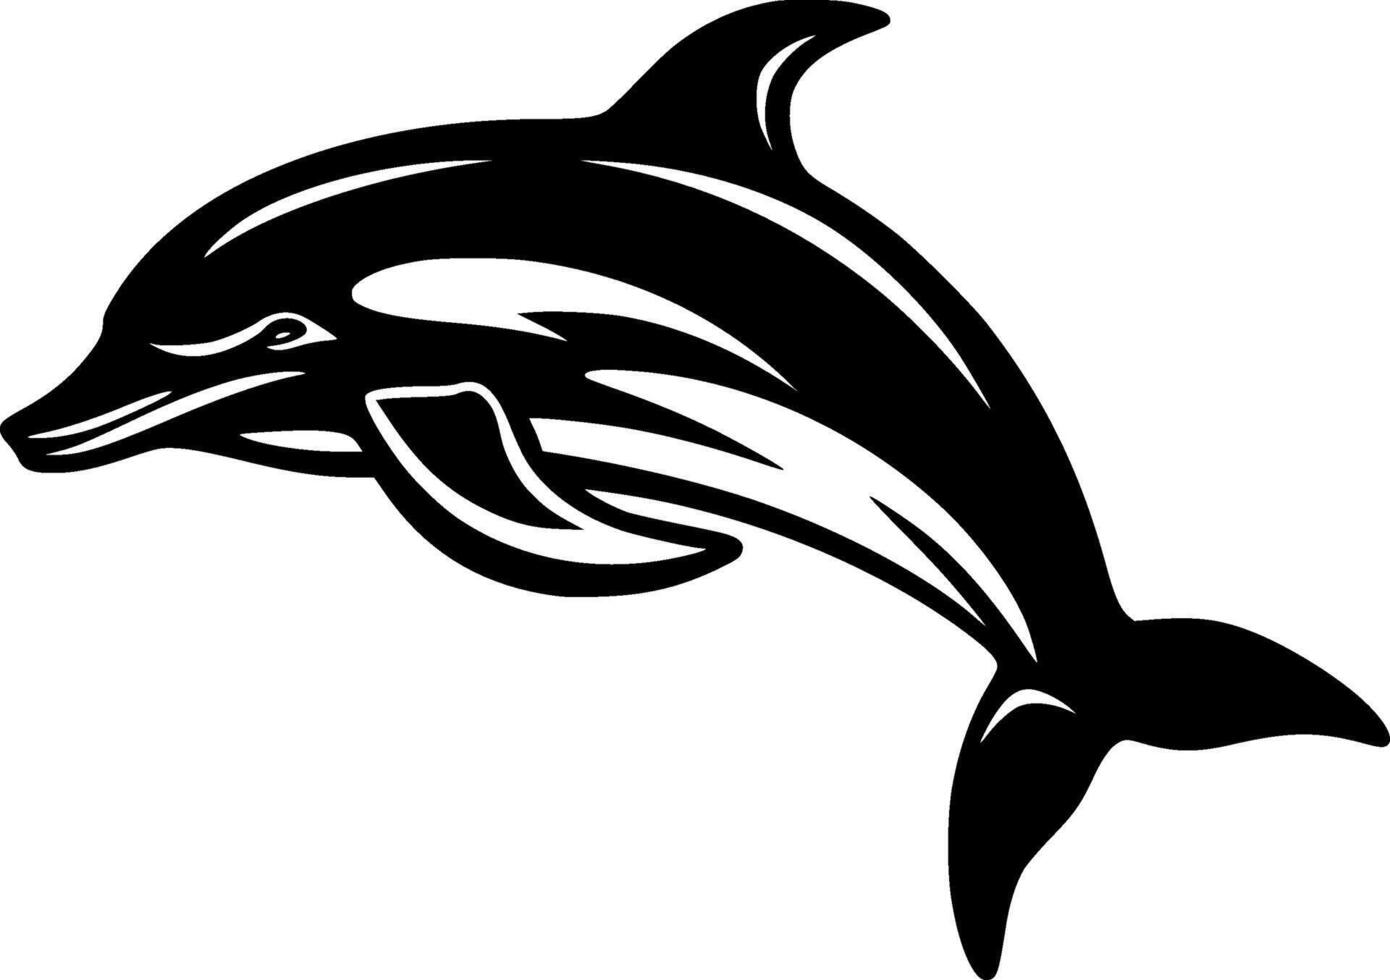 delfino - alto qualità vettore logo - vettore illustrazione ideale per maglietta grafico